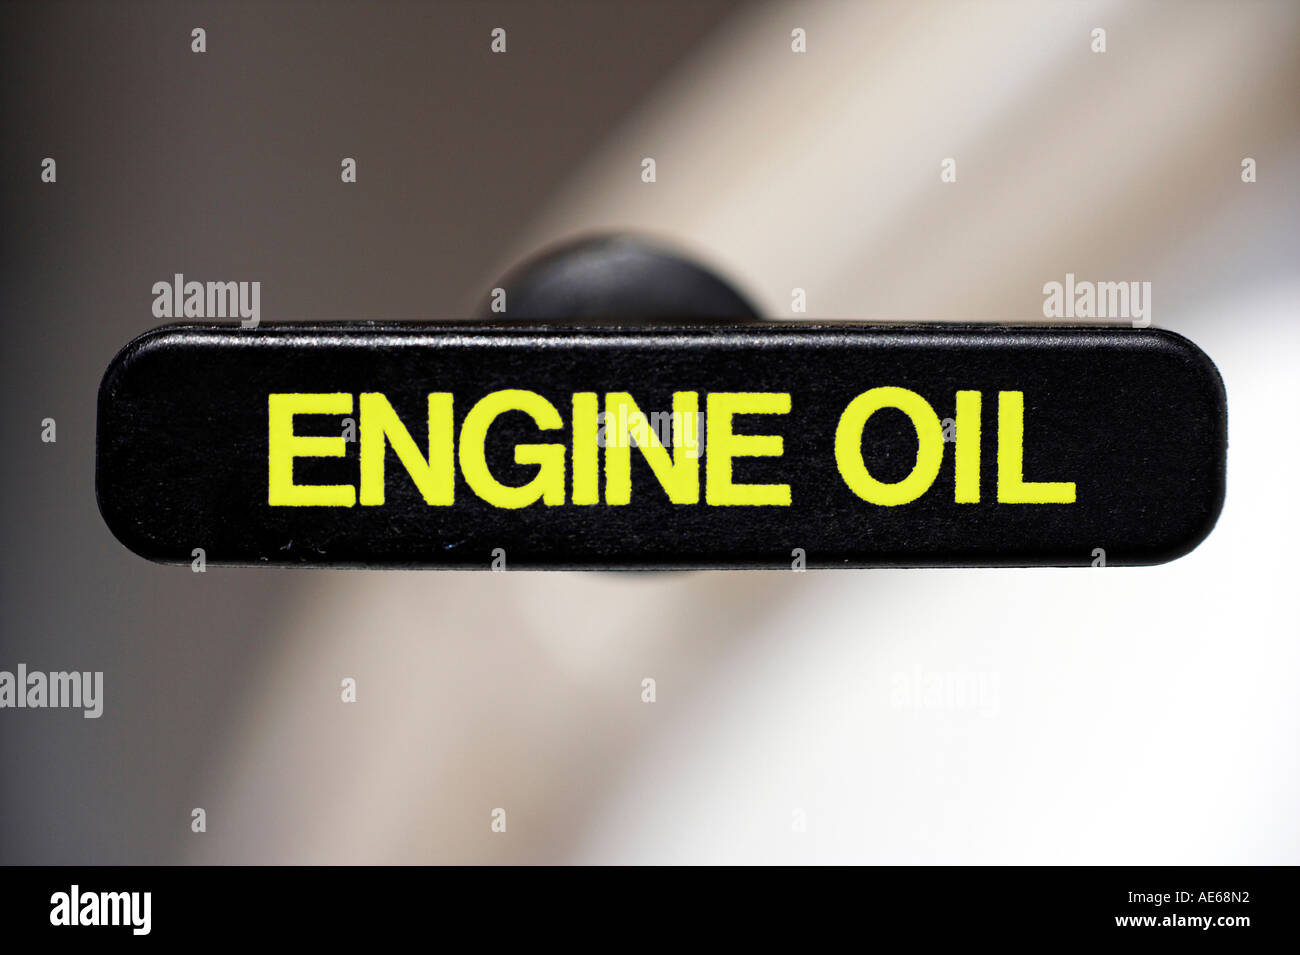 Chiudere la maniglia di un combustibile astina di livello del motore per la misurazione del livello dell'olio Foto Stock